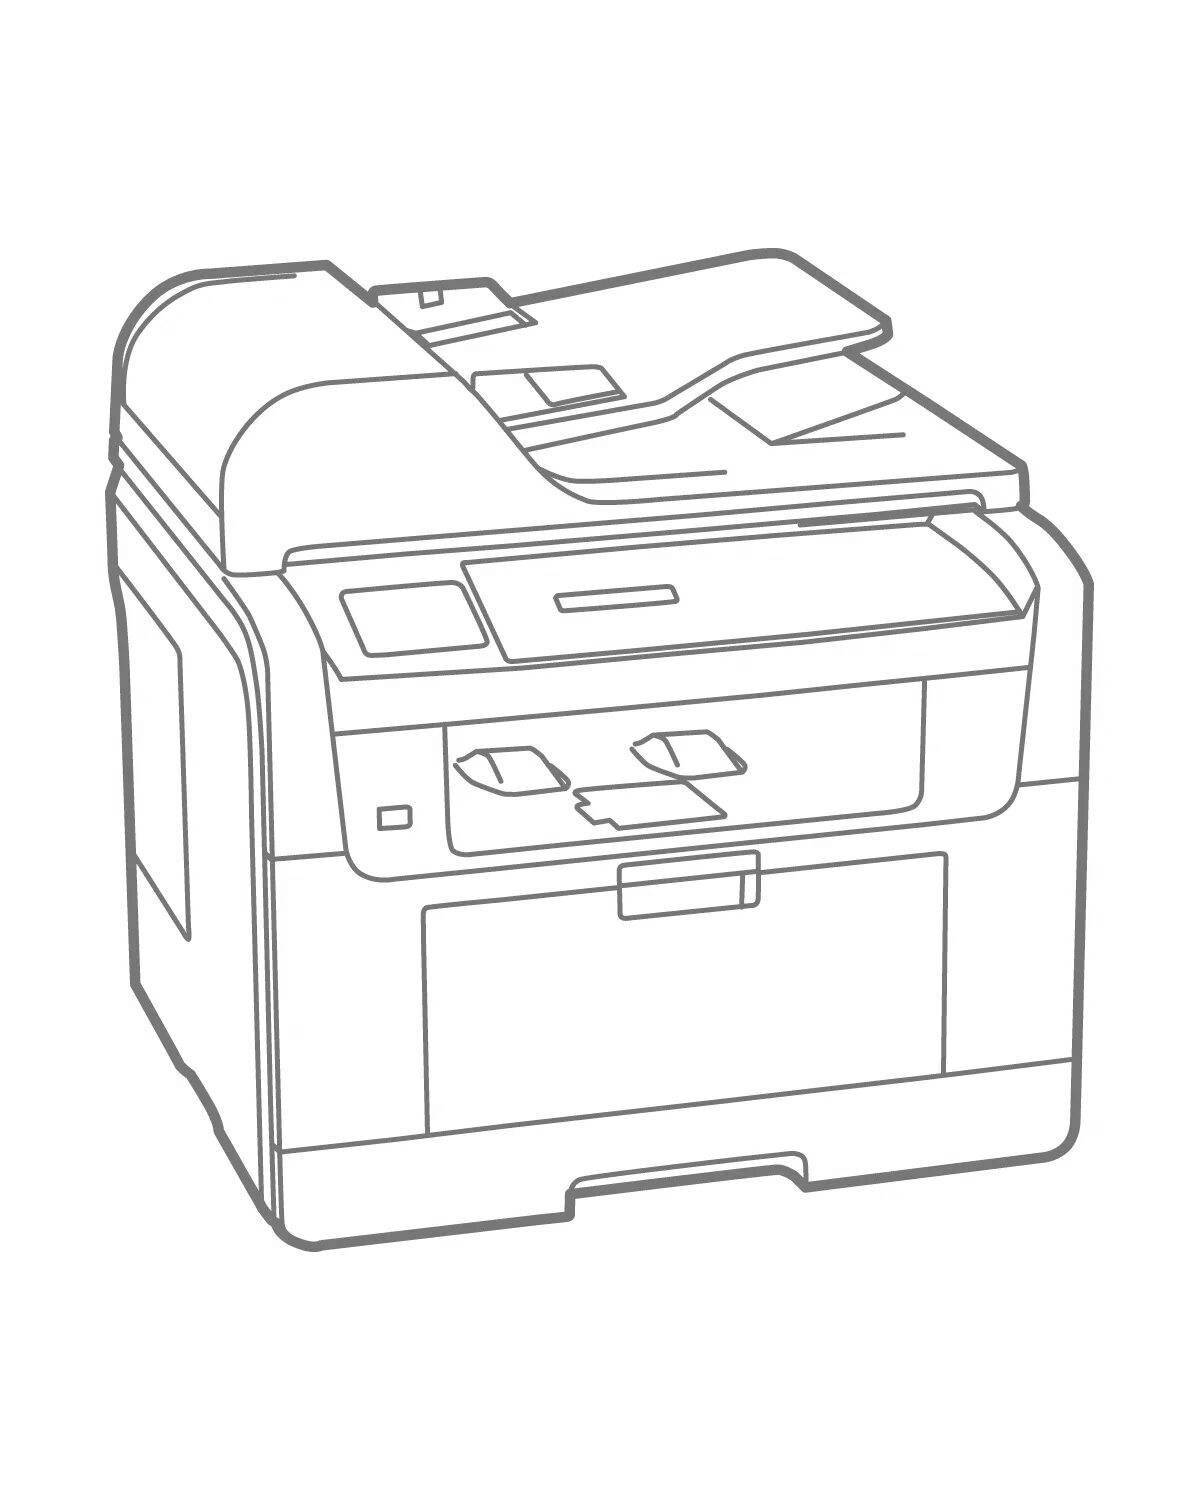 Завораживающая раскраска принтера